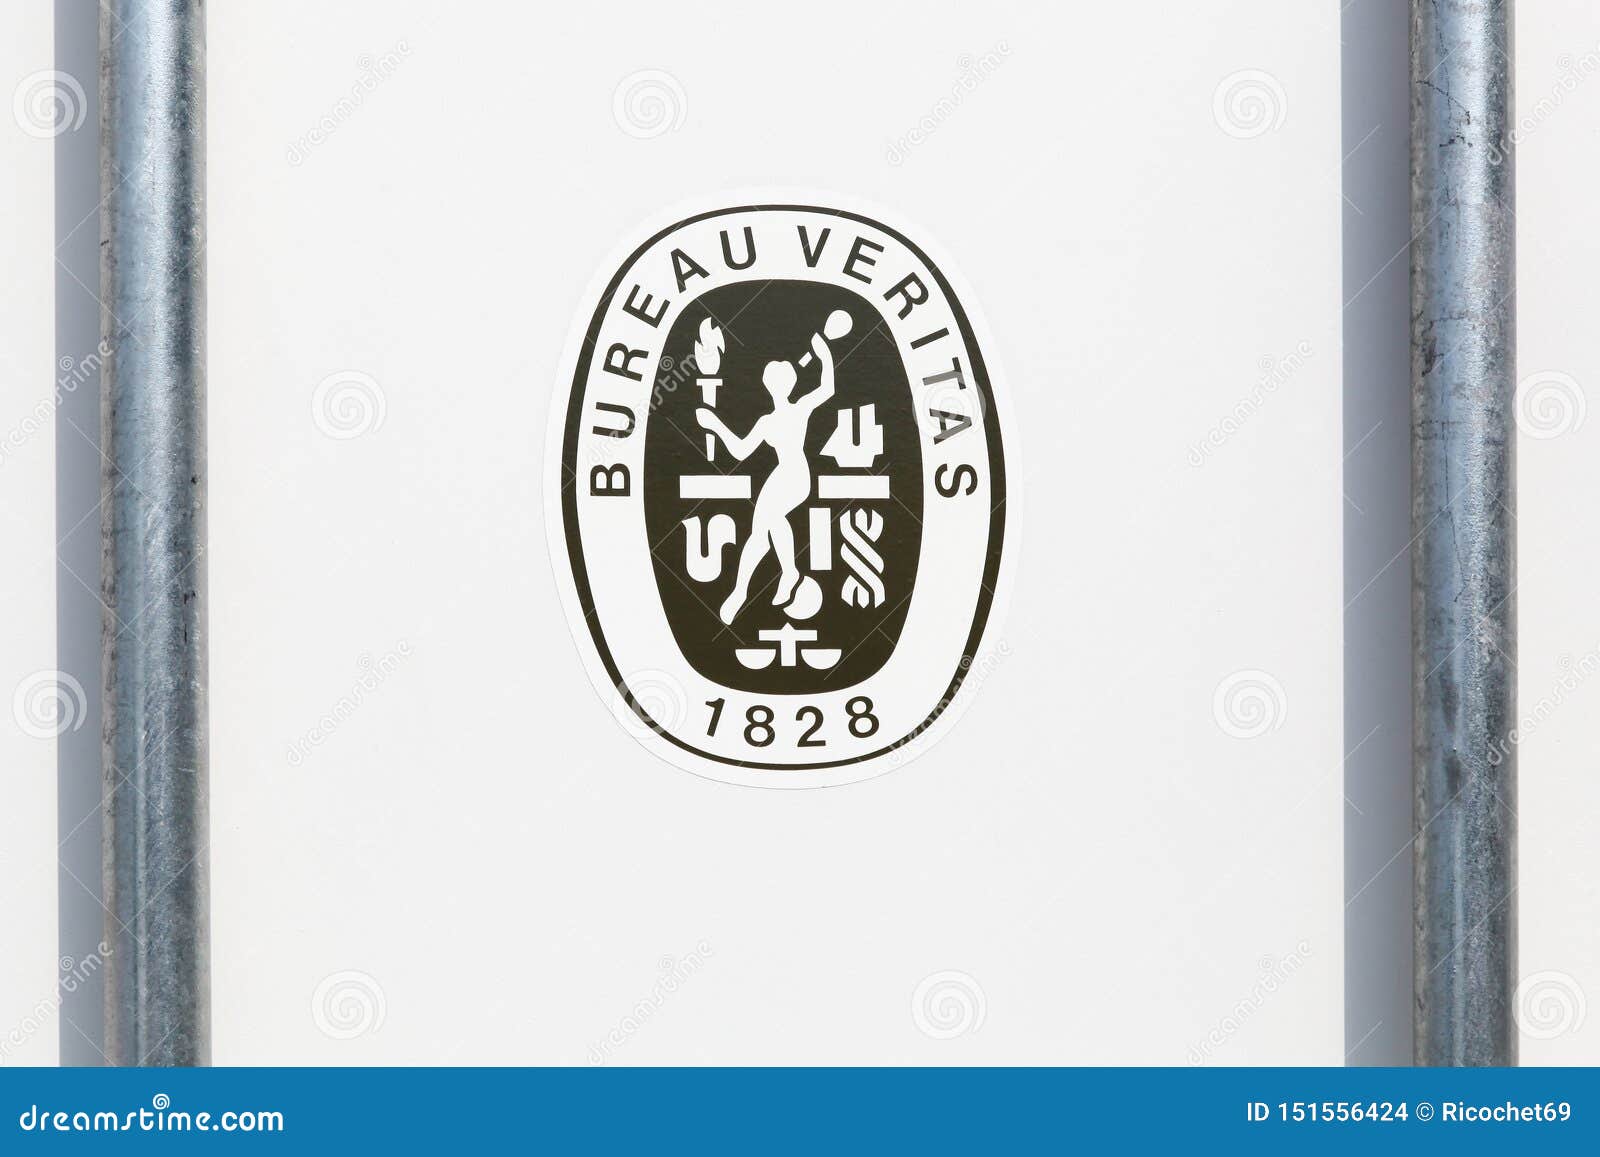 Bureau Veritas Logo History | Veritas, Ex libris, History